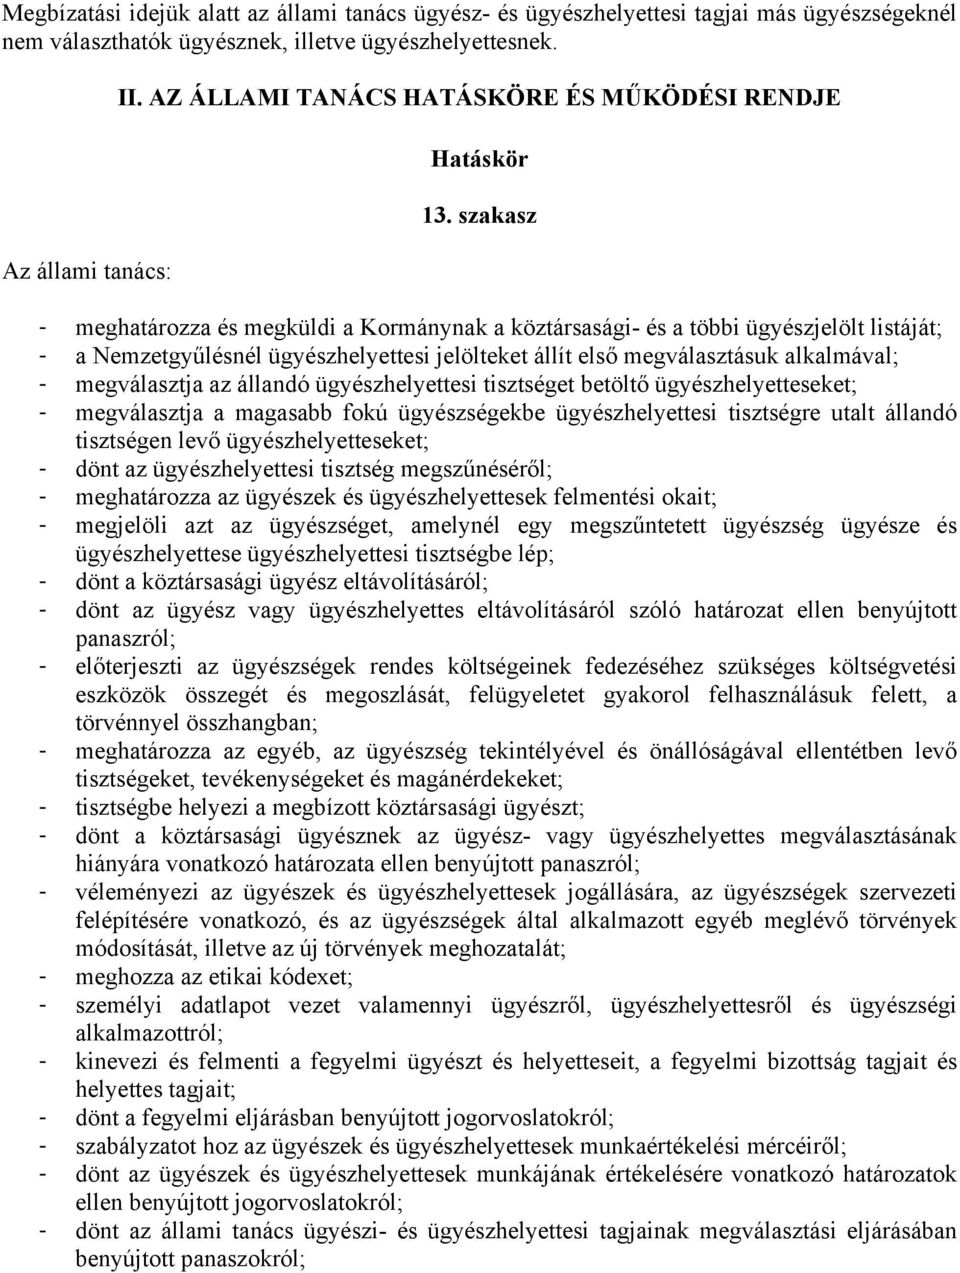 szakasz - meghatározza és megküldi a Kormánynak a köztársasági- és a többi ügyészjelölt listáját; - a Nemzetgyűlésnél ügyészhelyettesi jelölteket állít első megválasztásuk alkalmával; - megválasztja